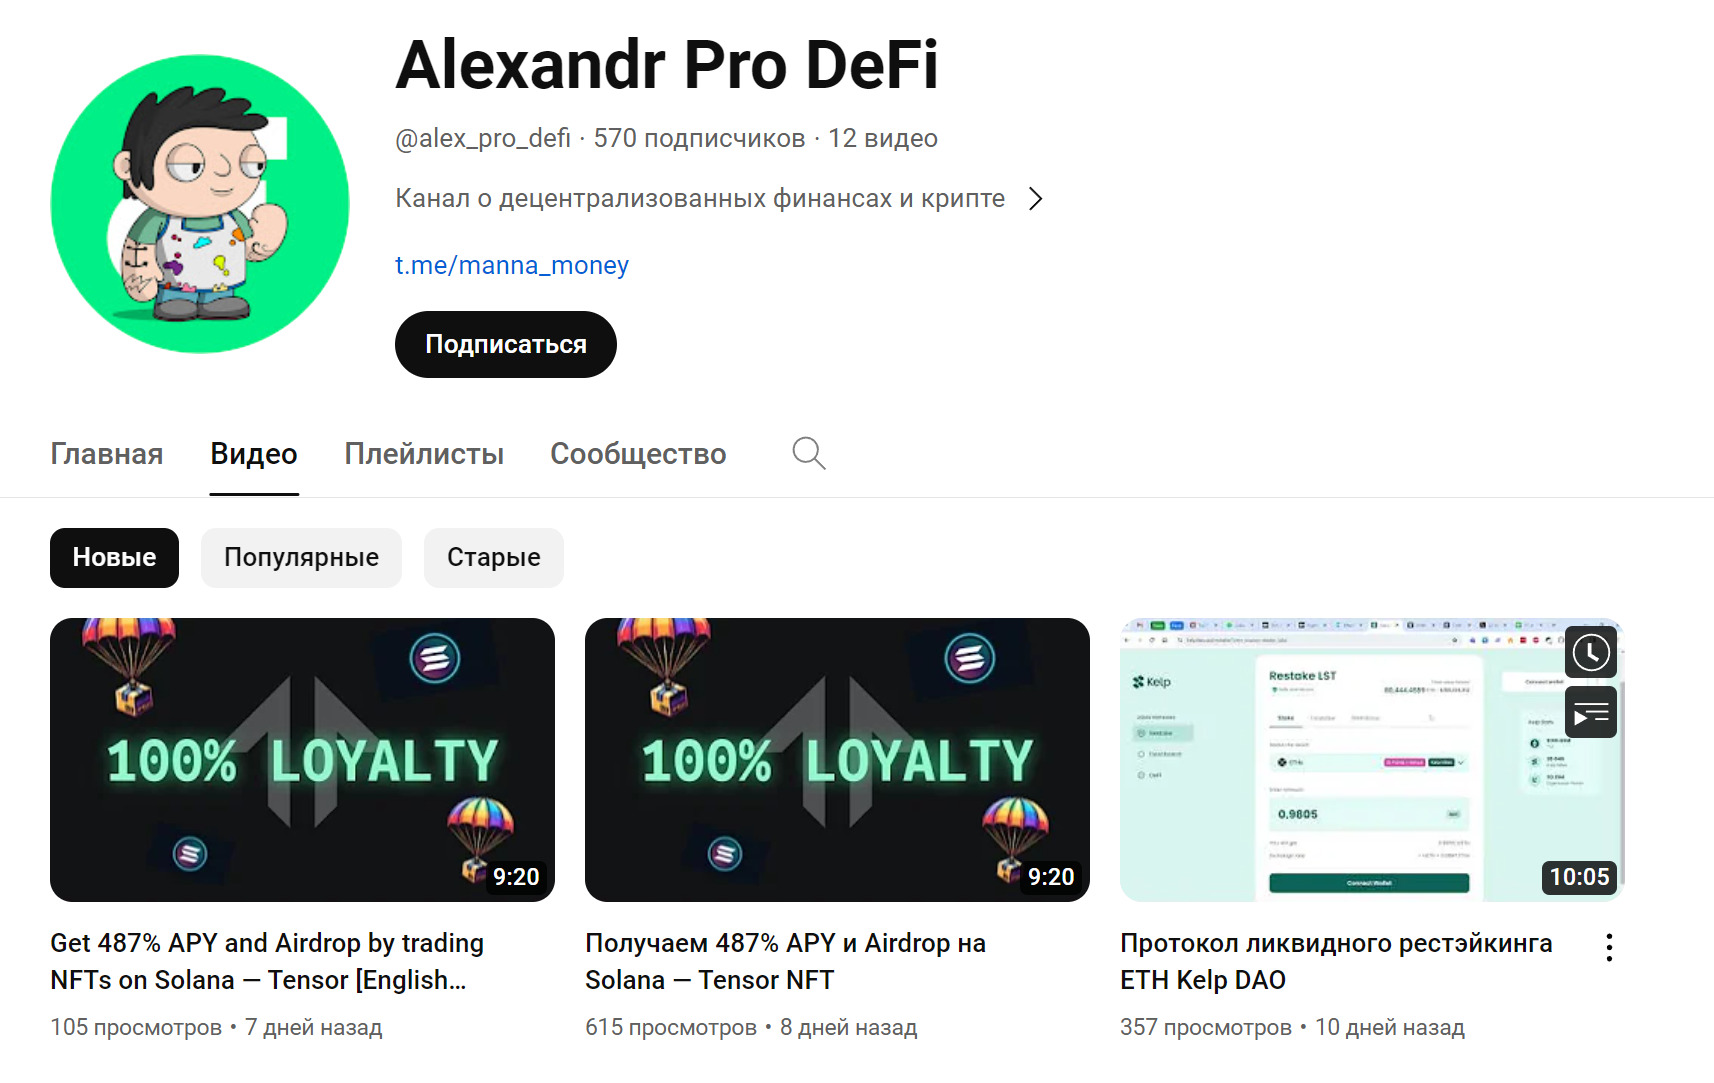 Ютуб канал Alexandr Pro DeFi